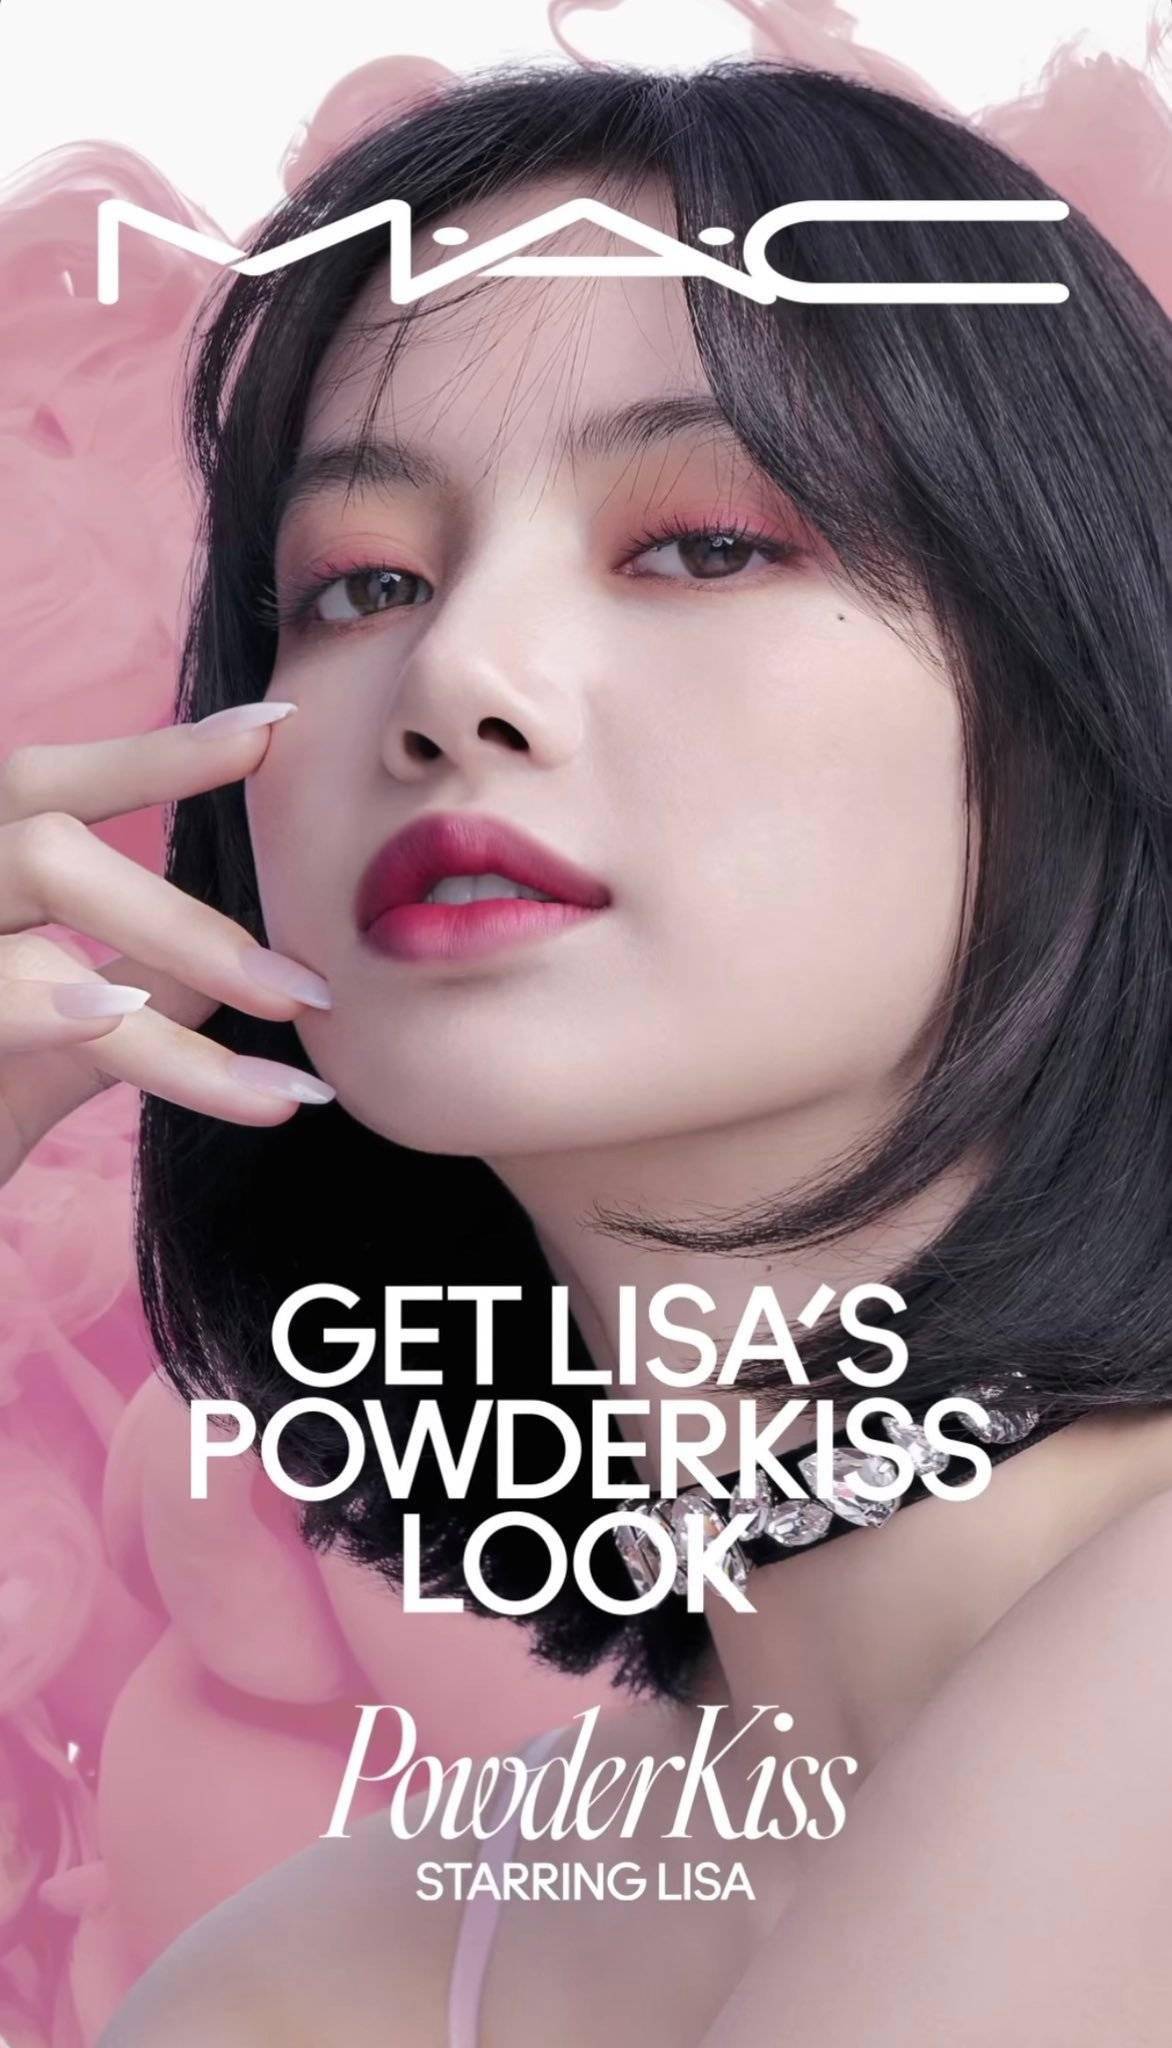 代言人lisa最新广告宣传图,浪漫桃系妆容打造真人芭比美貌